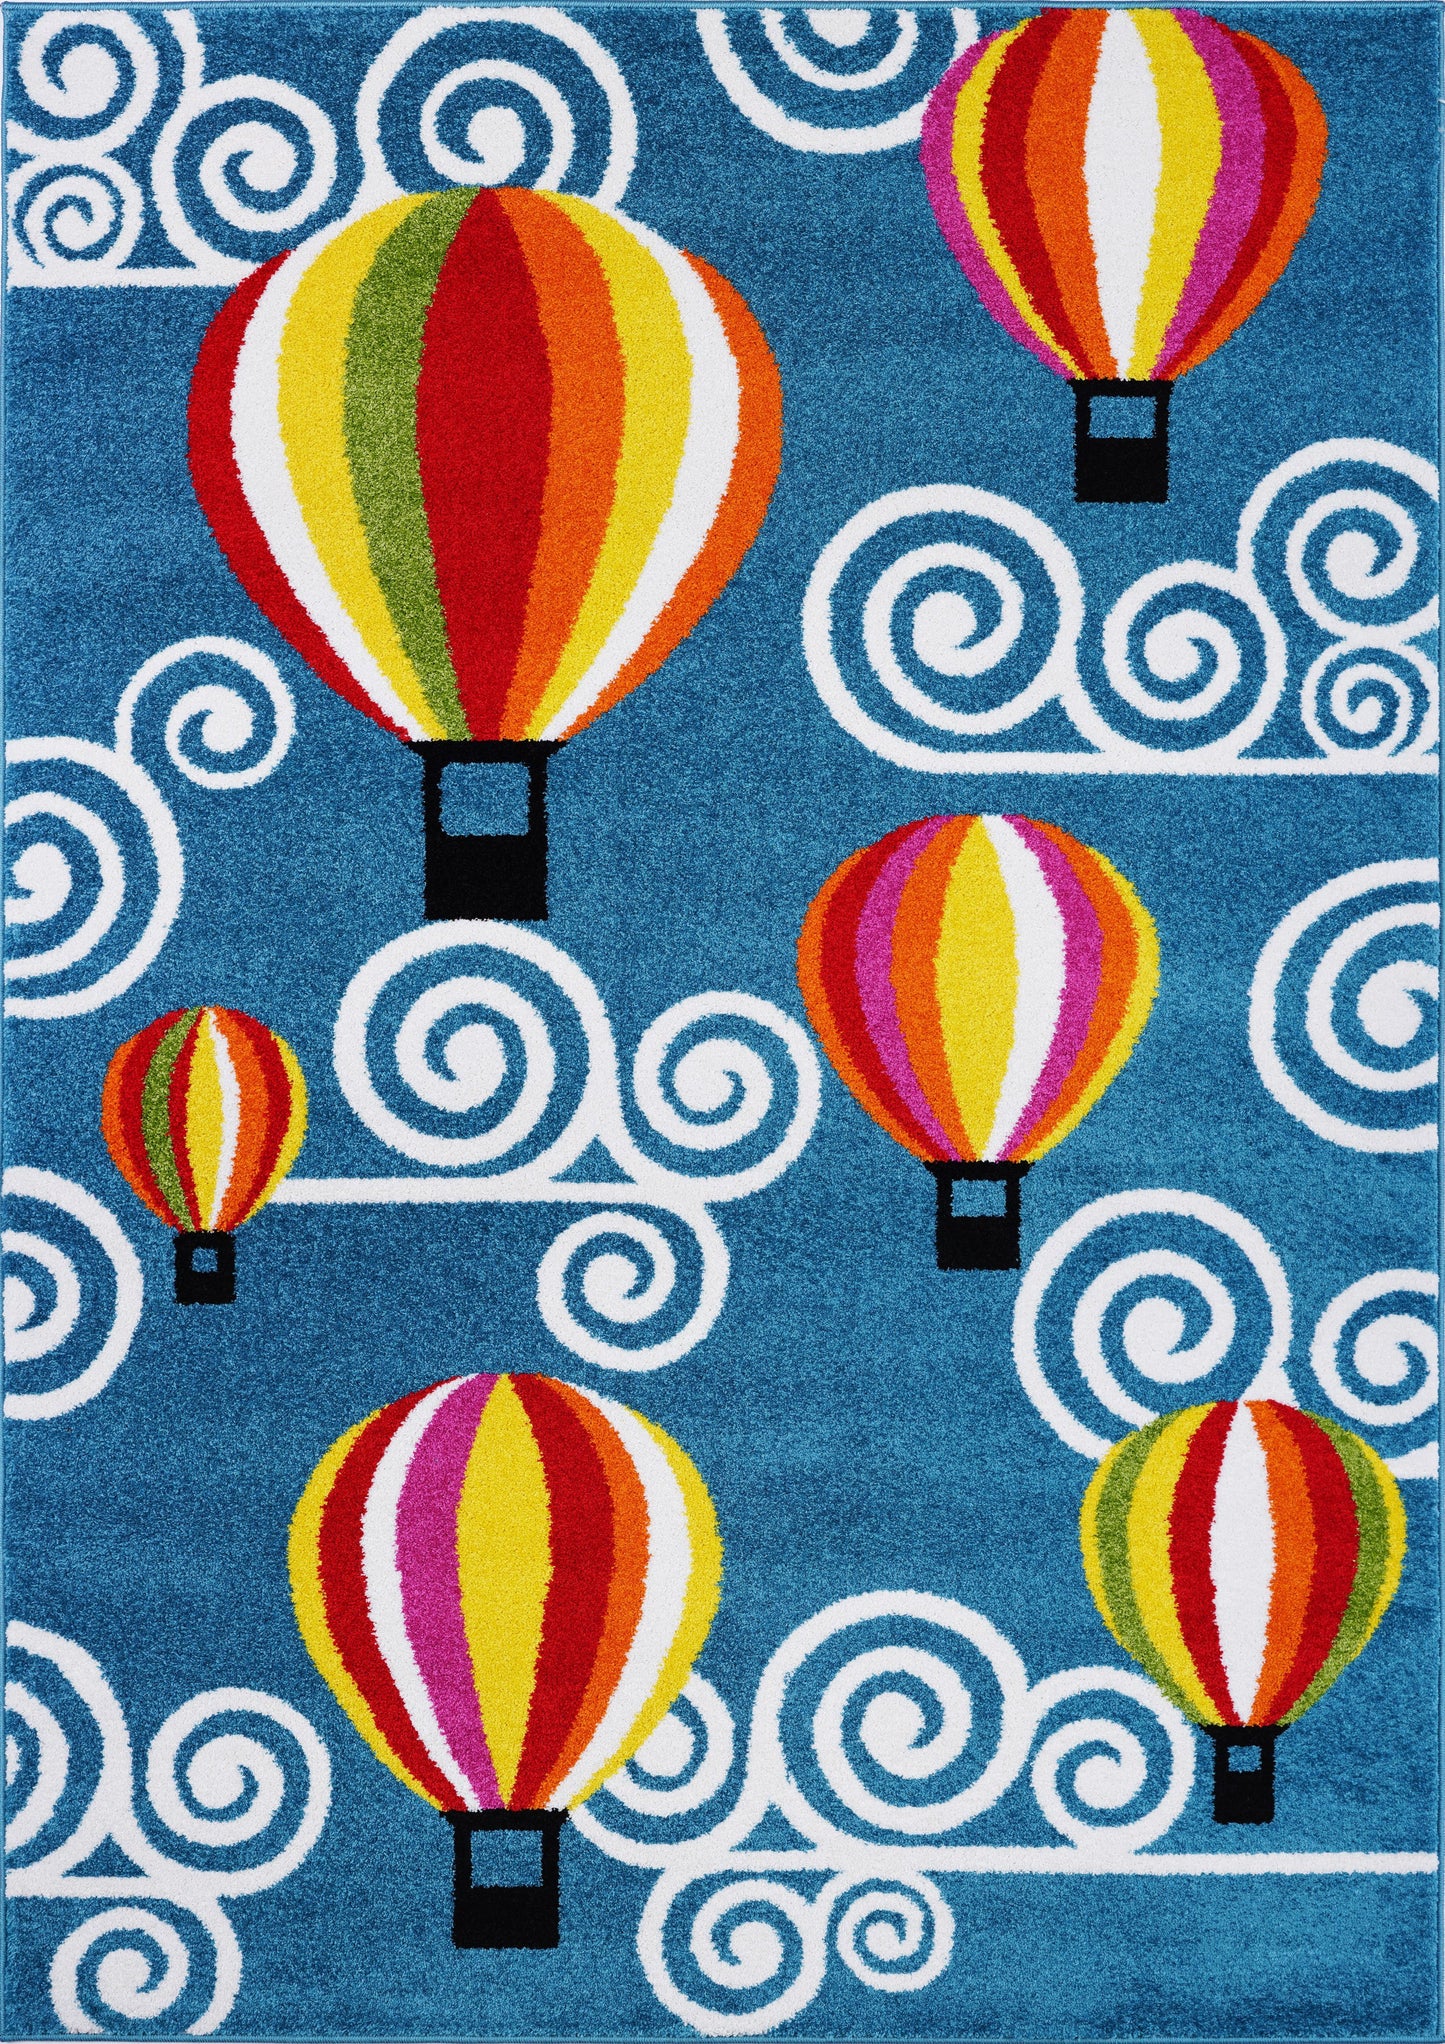 Hot Air Balloon and Sky Design European Durable Kids Area Rug Carpet in Blue, 5x7 (5'3" x 7'4", 160cm x 225cm), 5'3" x 7'4" (160cm x 225cm), Blue